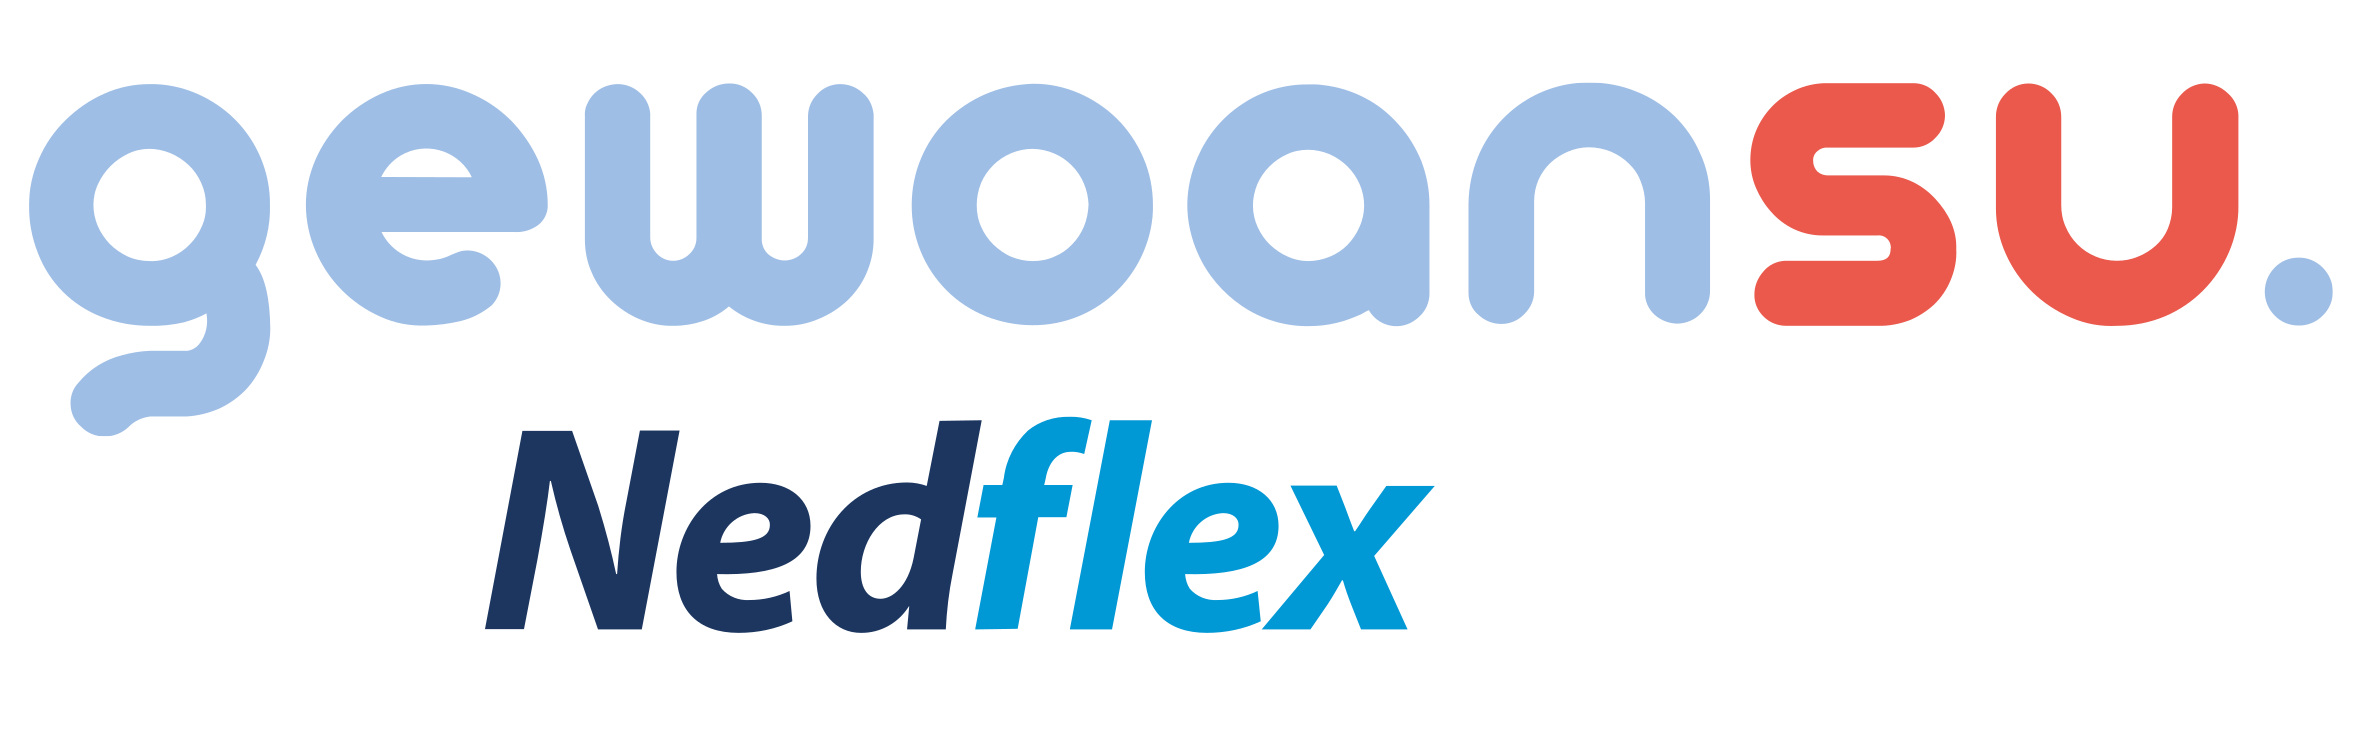 Gewoansu-logo-nedflex